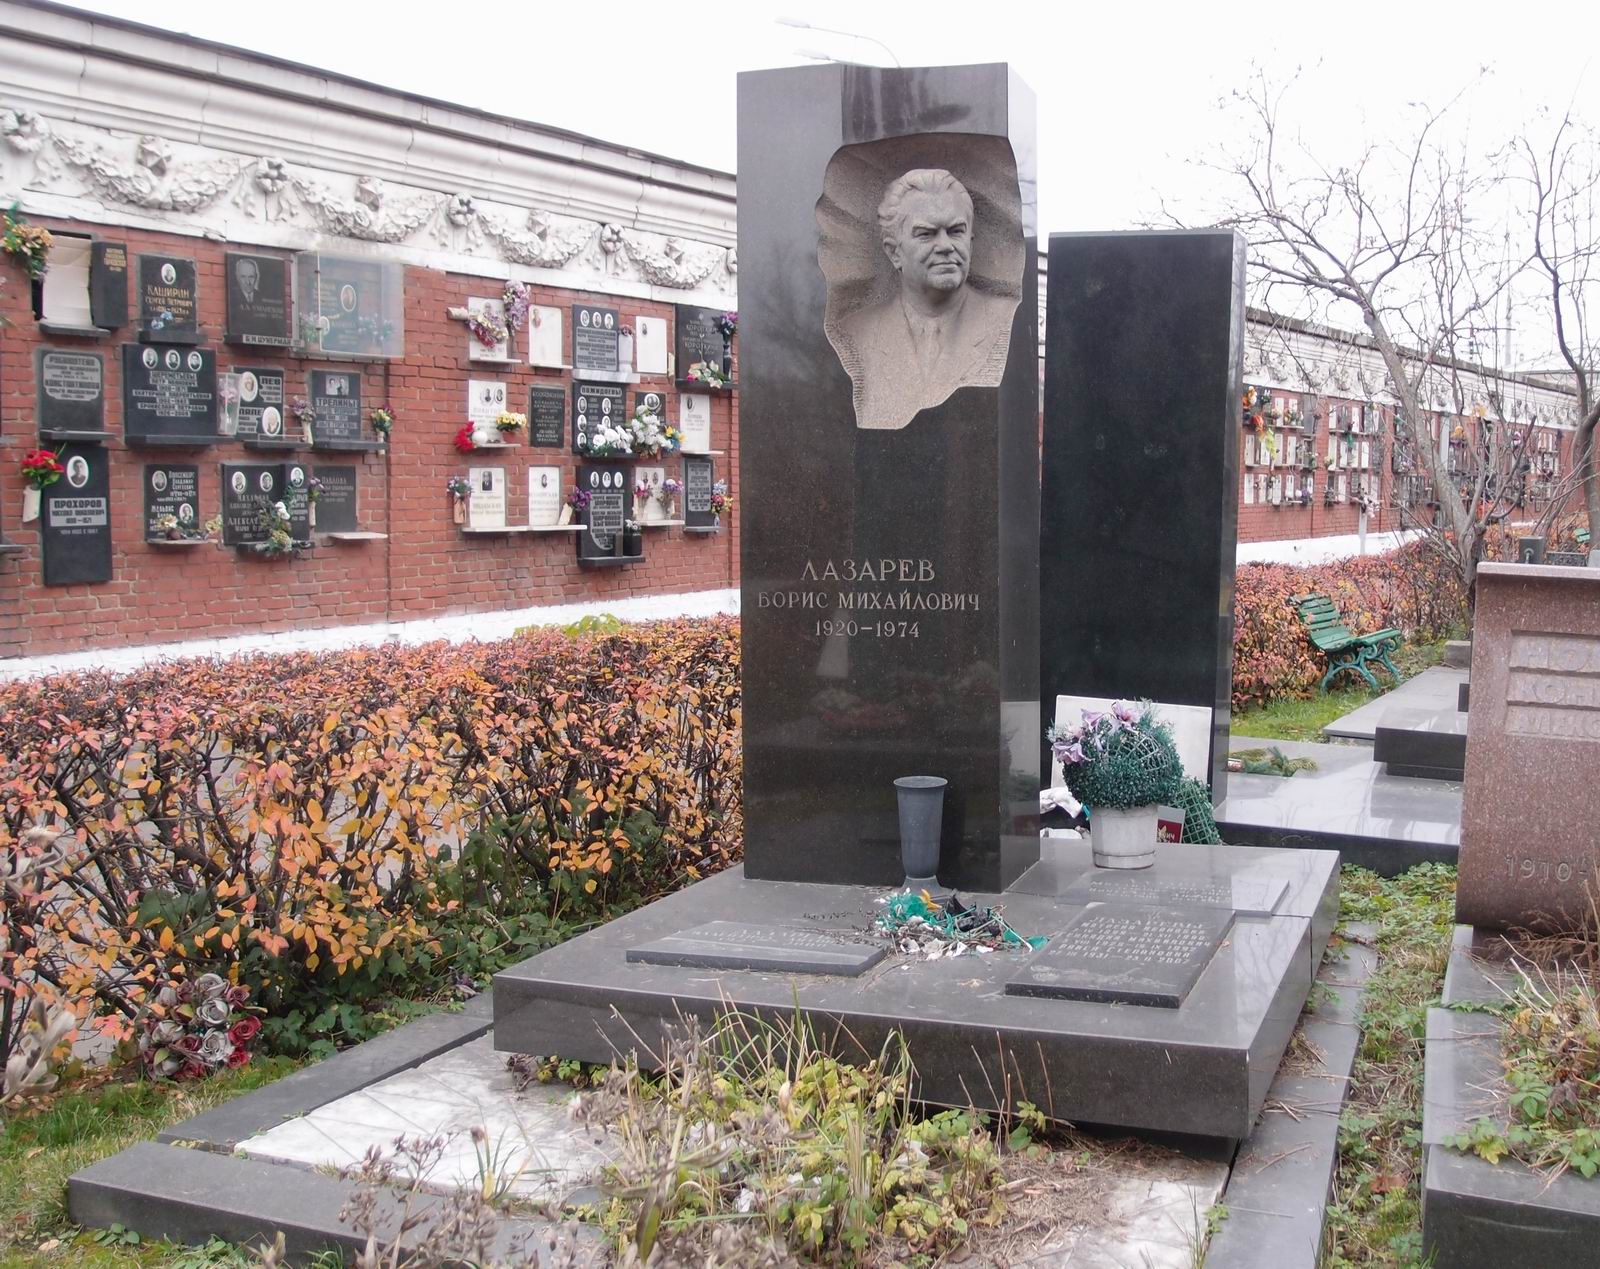 Памятник на могиле Лазарева Б.М. (1920-1974), на Новодевичьем кладбище (7-9-23).